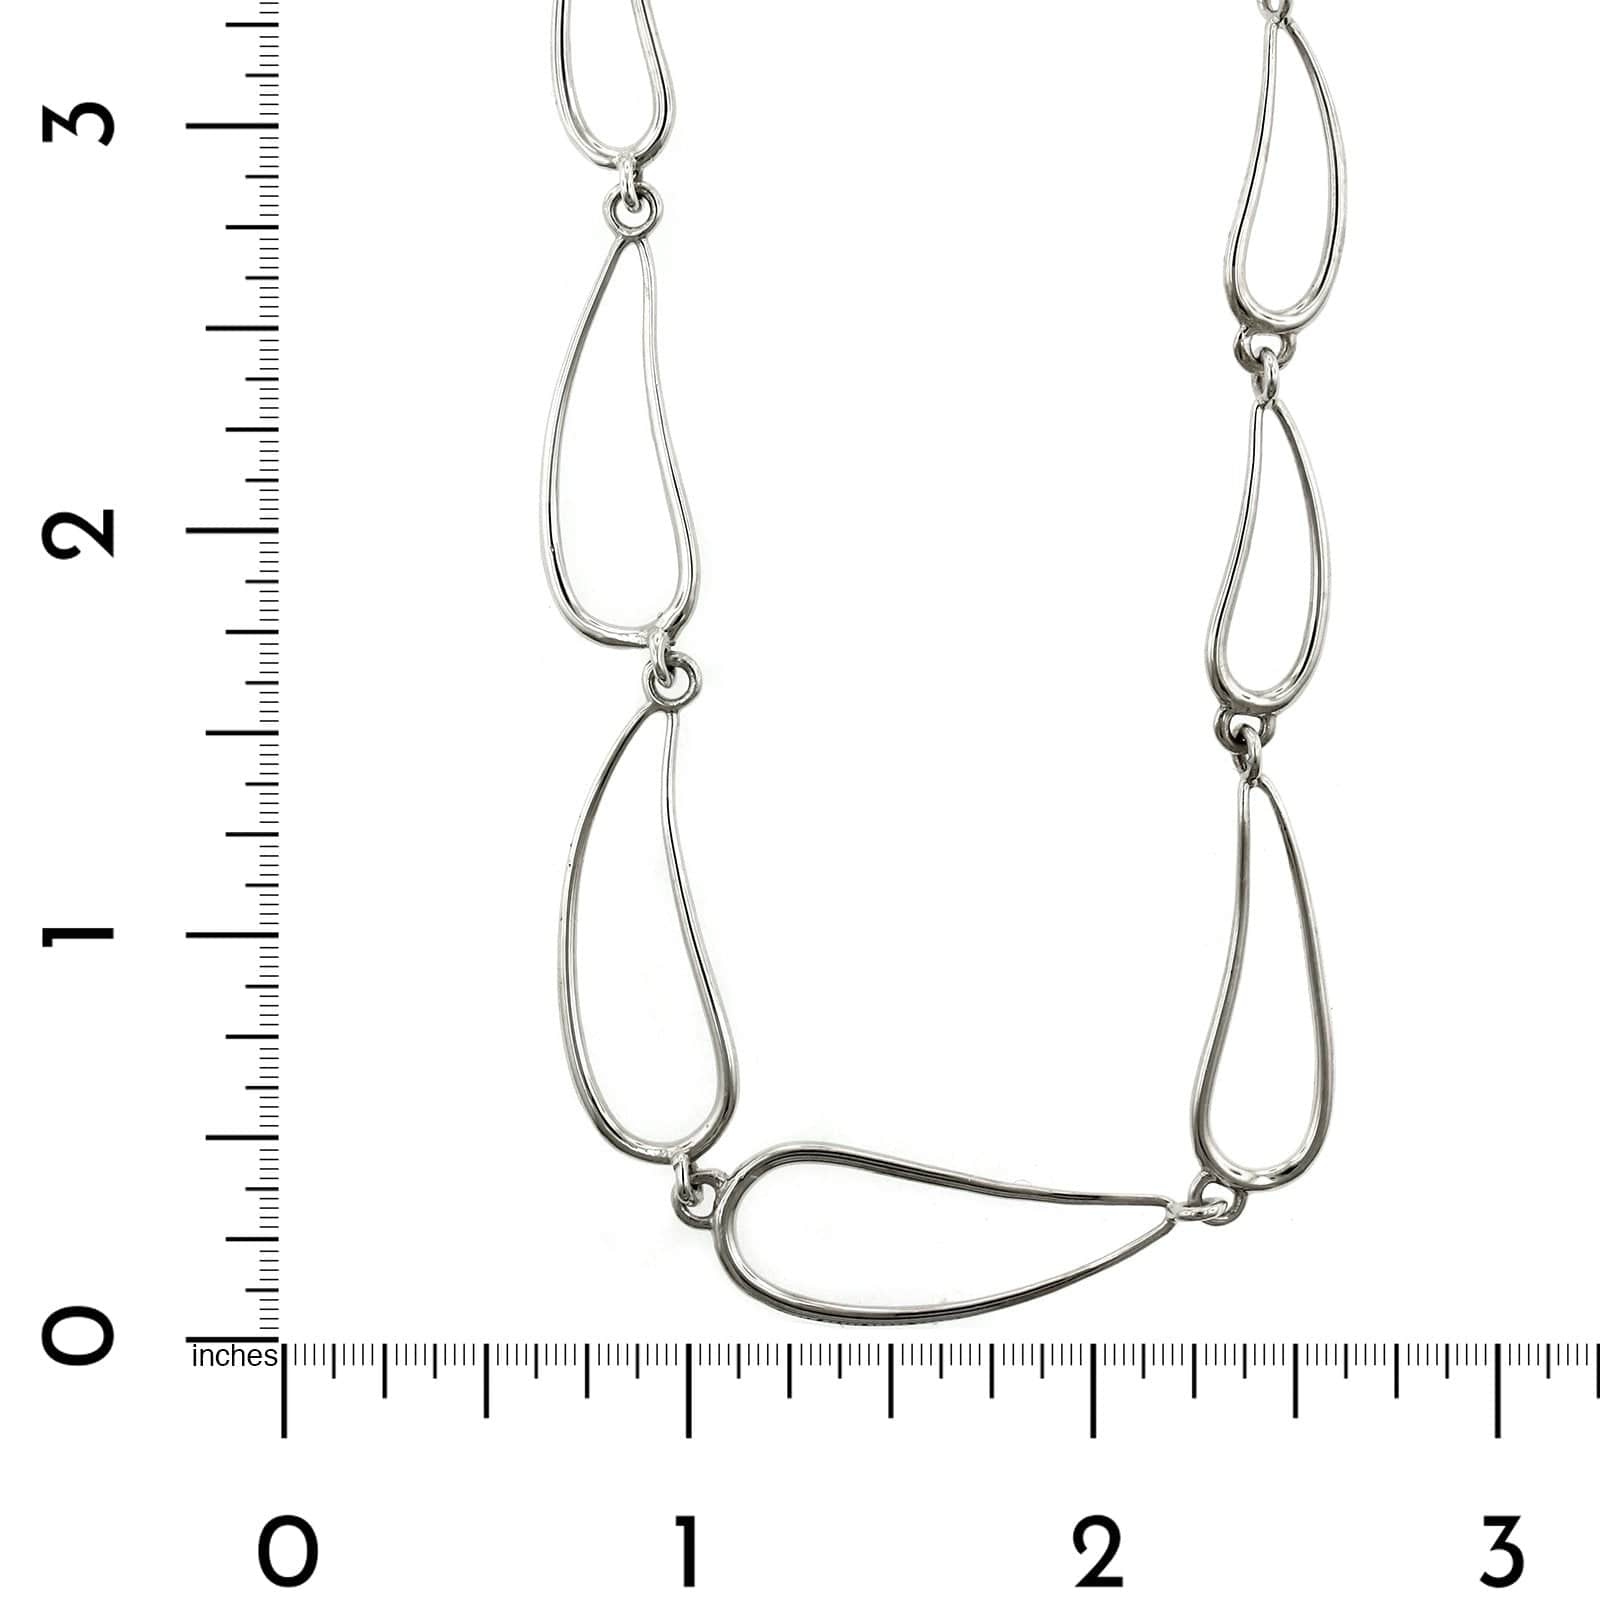 Sterling Silver Open Teardrop Necklace